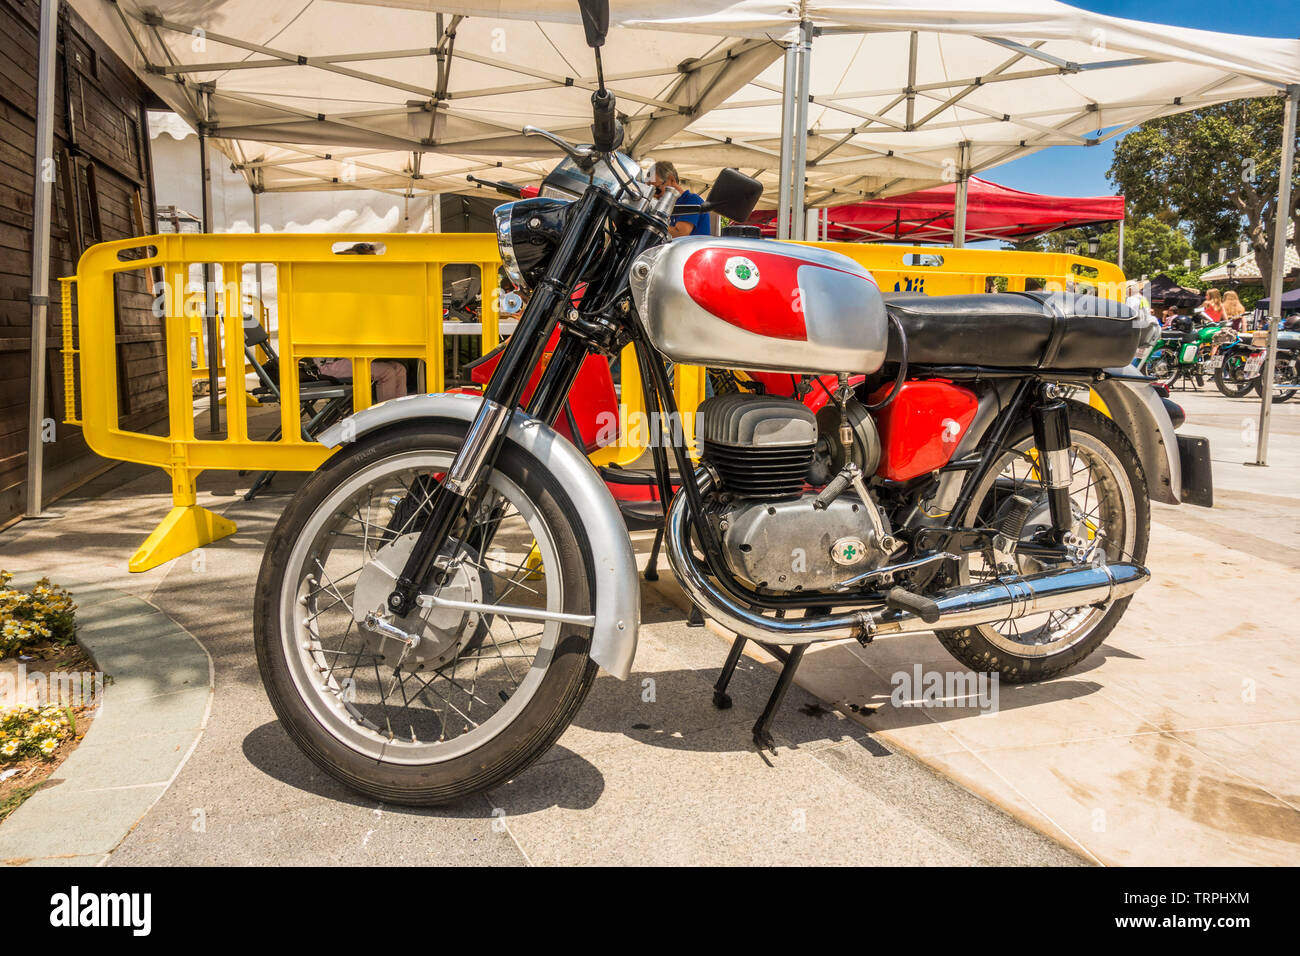 Ossa 230 sport, moto classique, sur l'affichage à une réunion annuelle de moto classique à Mijas, Andalousie, espagne. Banque D'Images